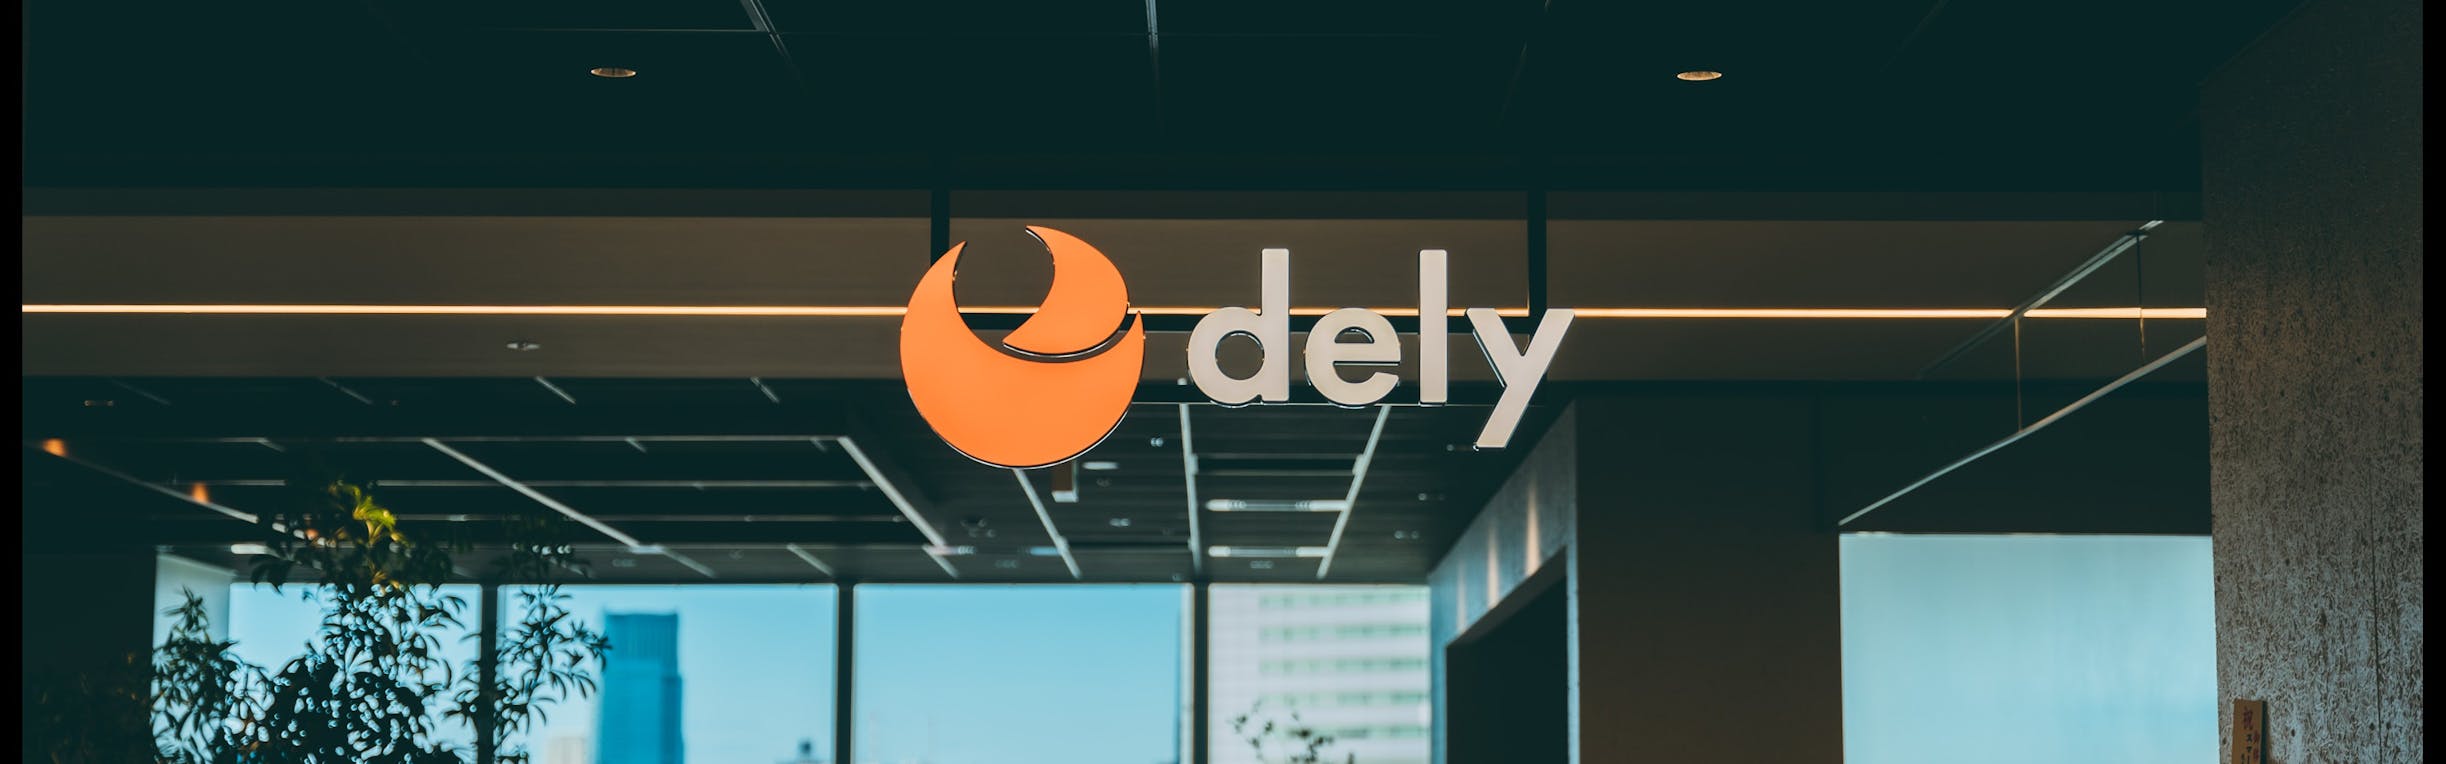 dely株式会社 - カバー画像